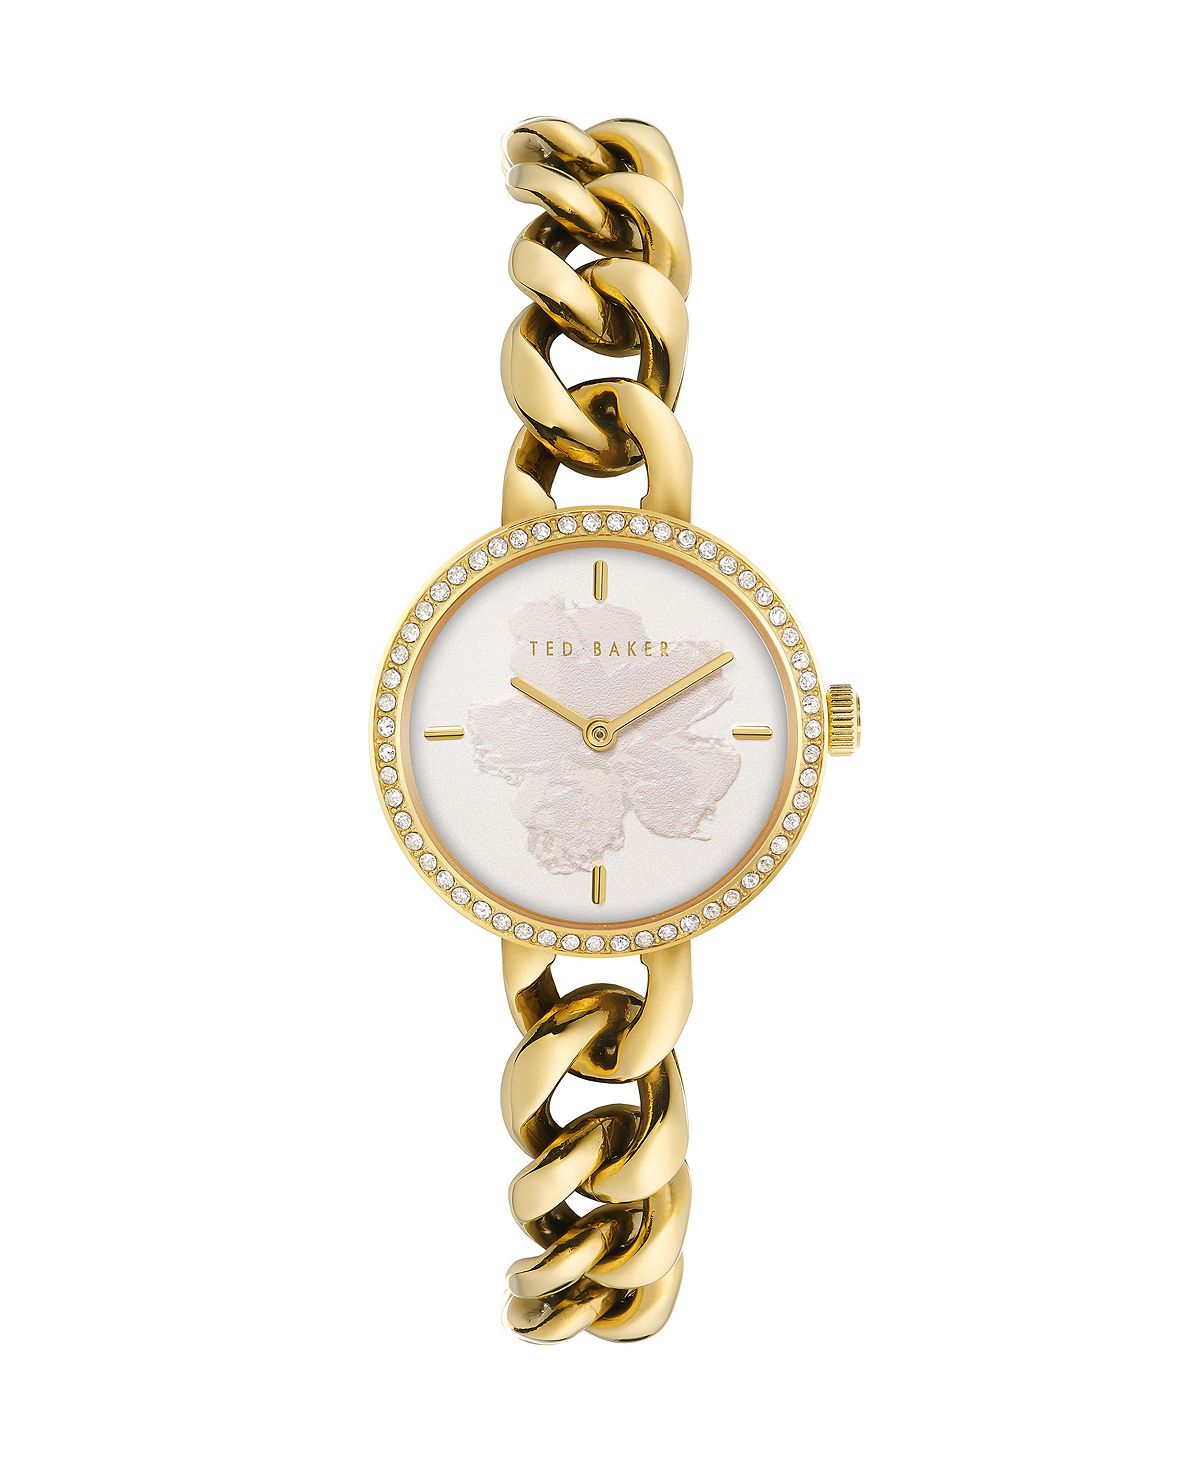 Женские часы Maiisie с золотистым браслетом из нержавеющей стали, 28 мм Ted Baker, золотой женские часы maiisie серебристого цвета с браслетом из нержавеющей стали 28 мм ted baker